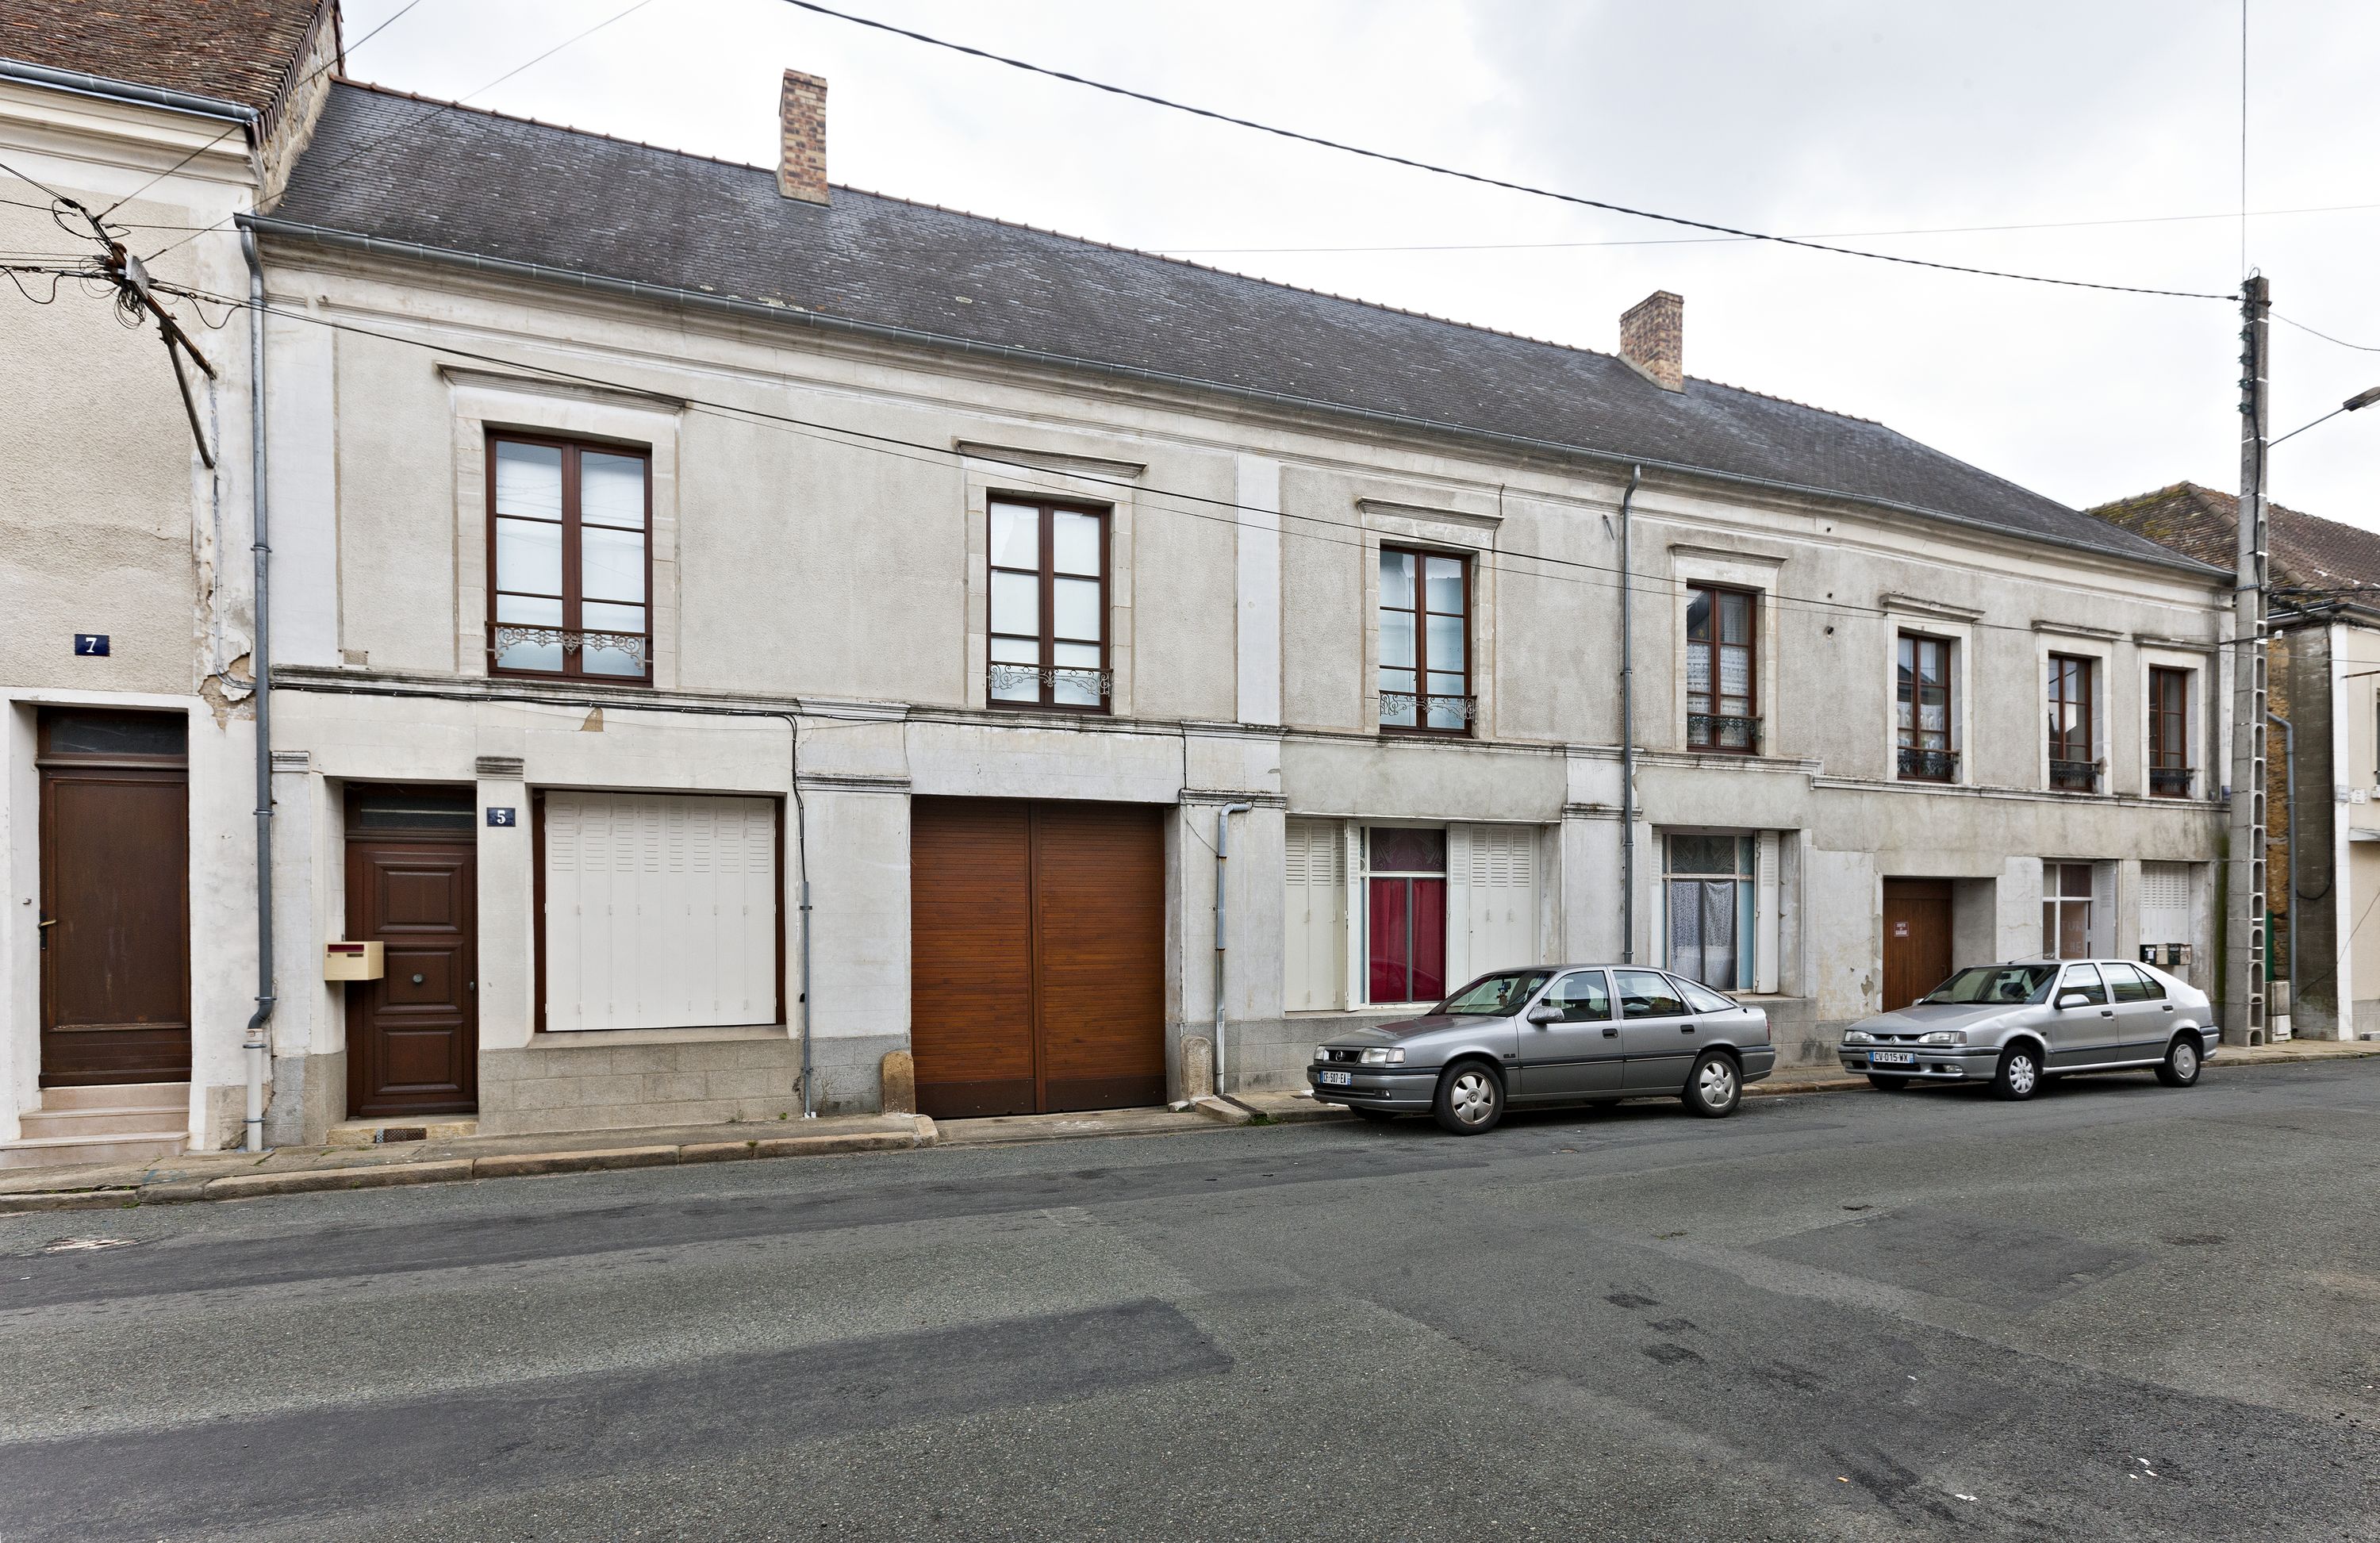 Immeuble et magasin de commerce, 1-5 rue Clémenceau à Bonnétable, actuellement immeuble à logements.